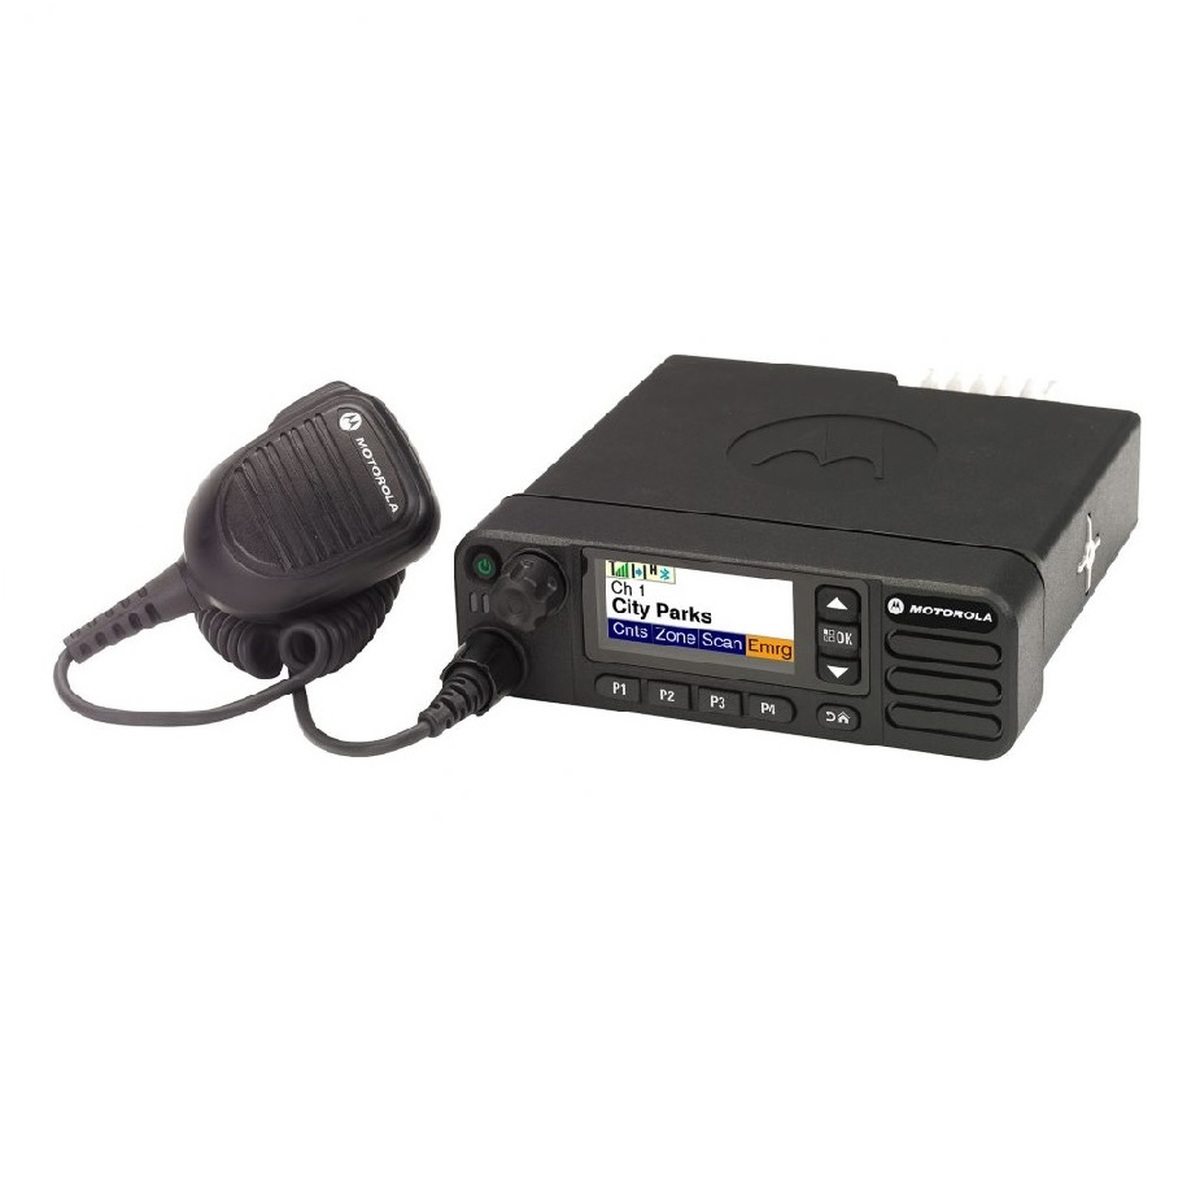 Radio Motorola DGM5500 Digital LAM28QNN9MA1AN UHF 403-470 MHZ de 25W